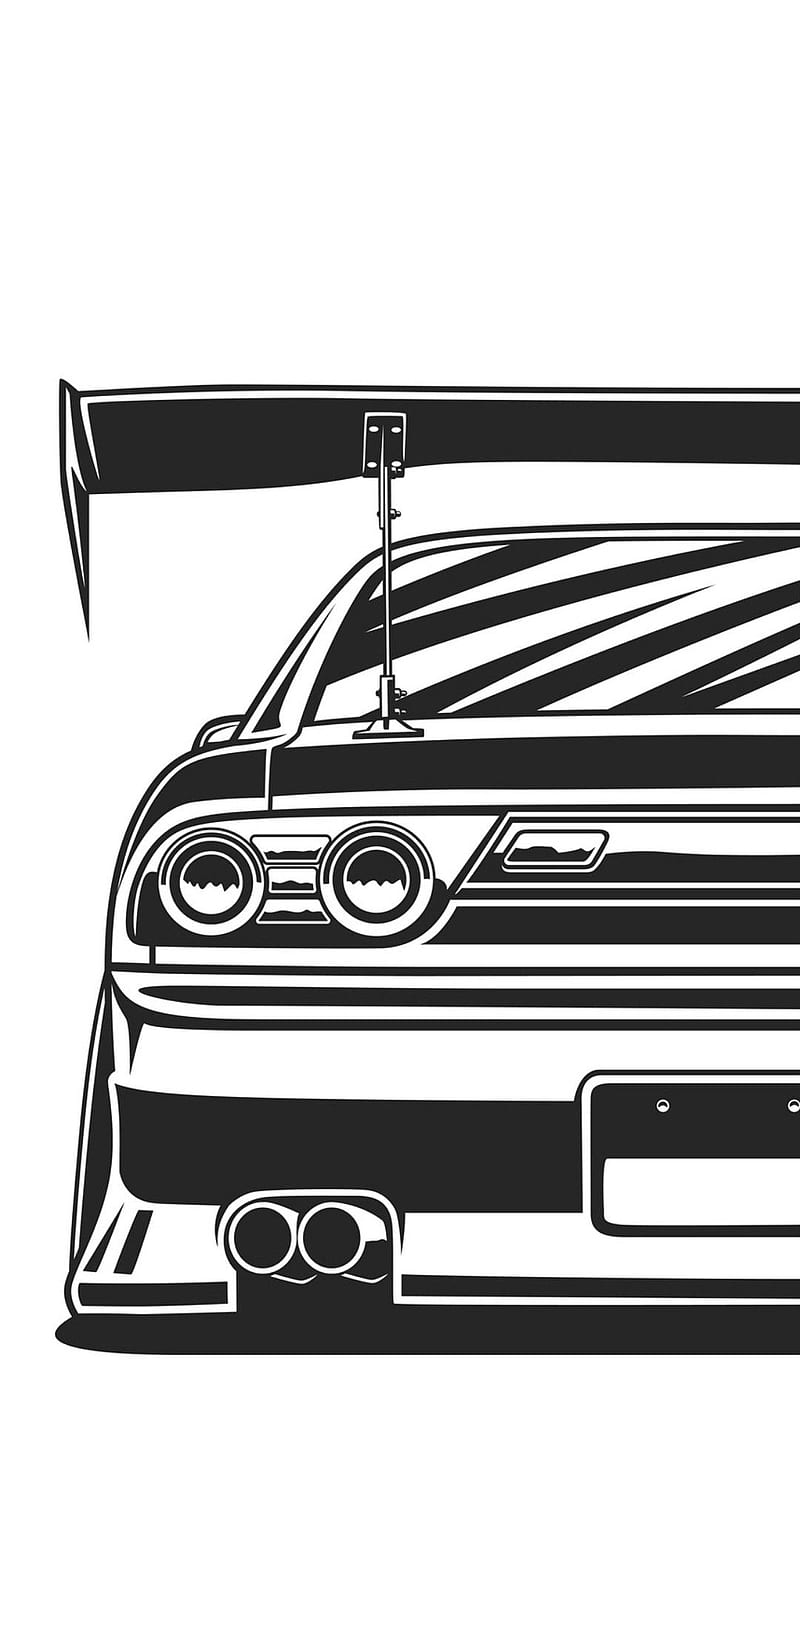 Nissan 240sx Hatch (S13). ÐÑÑÑÑÐµ ÑÐ°ÑÐºÐ¸, ÐÐ²ÑÐ¾Ð¼Ð¾Ð±Ð¸Ð»ÑÐ½Ð¾Ðµ Ð¸ÑÐºÑÑÑÑÐ²Ð¾, Ð¢ÑÐ½Ð¸Ð½Ð³Ð¾Ð²Ð°Ð½Ð½ÑÐµ Ð°Ð²ÑÐ¾Ð¼Ð¾Ð±Ð¸Ð»Ð¸, HD phone wallpaper